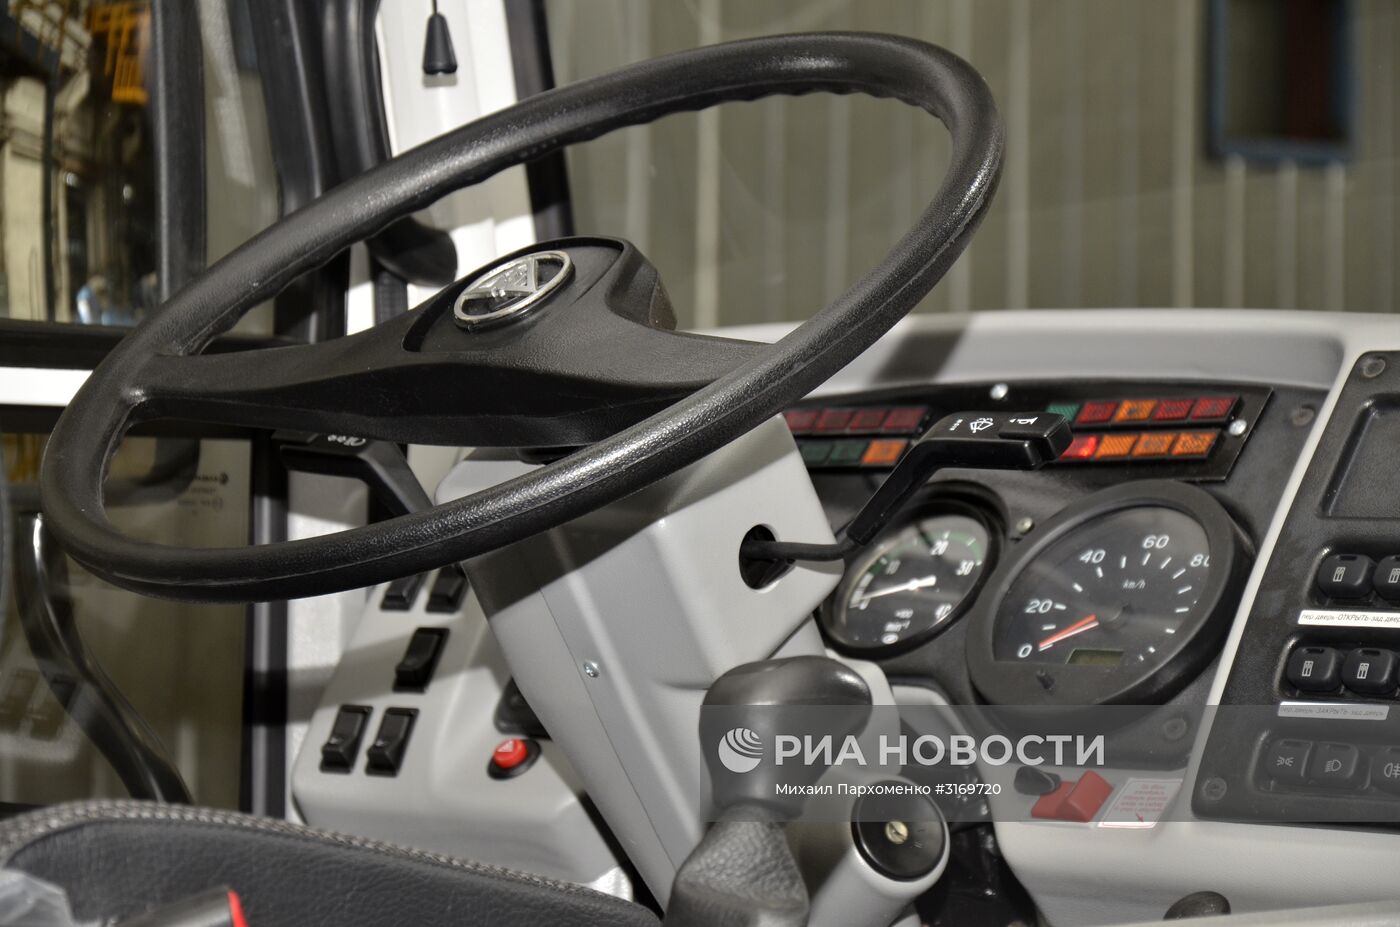 Сборка первых автобусов на государственном предприятии "Донецкгормаш"